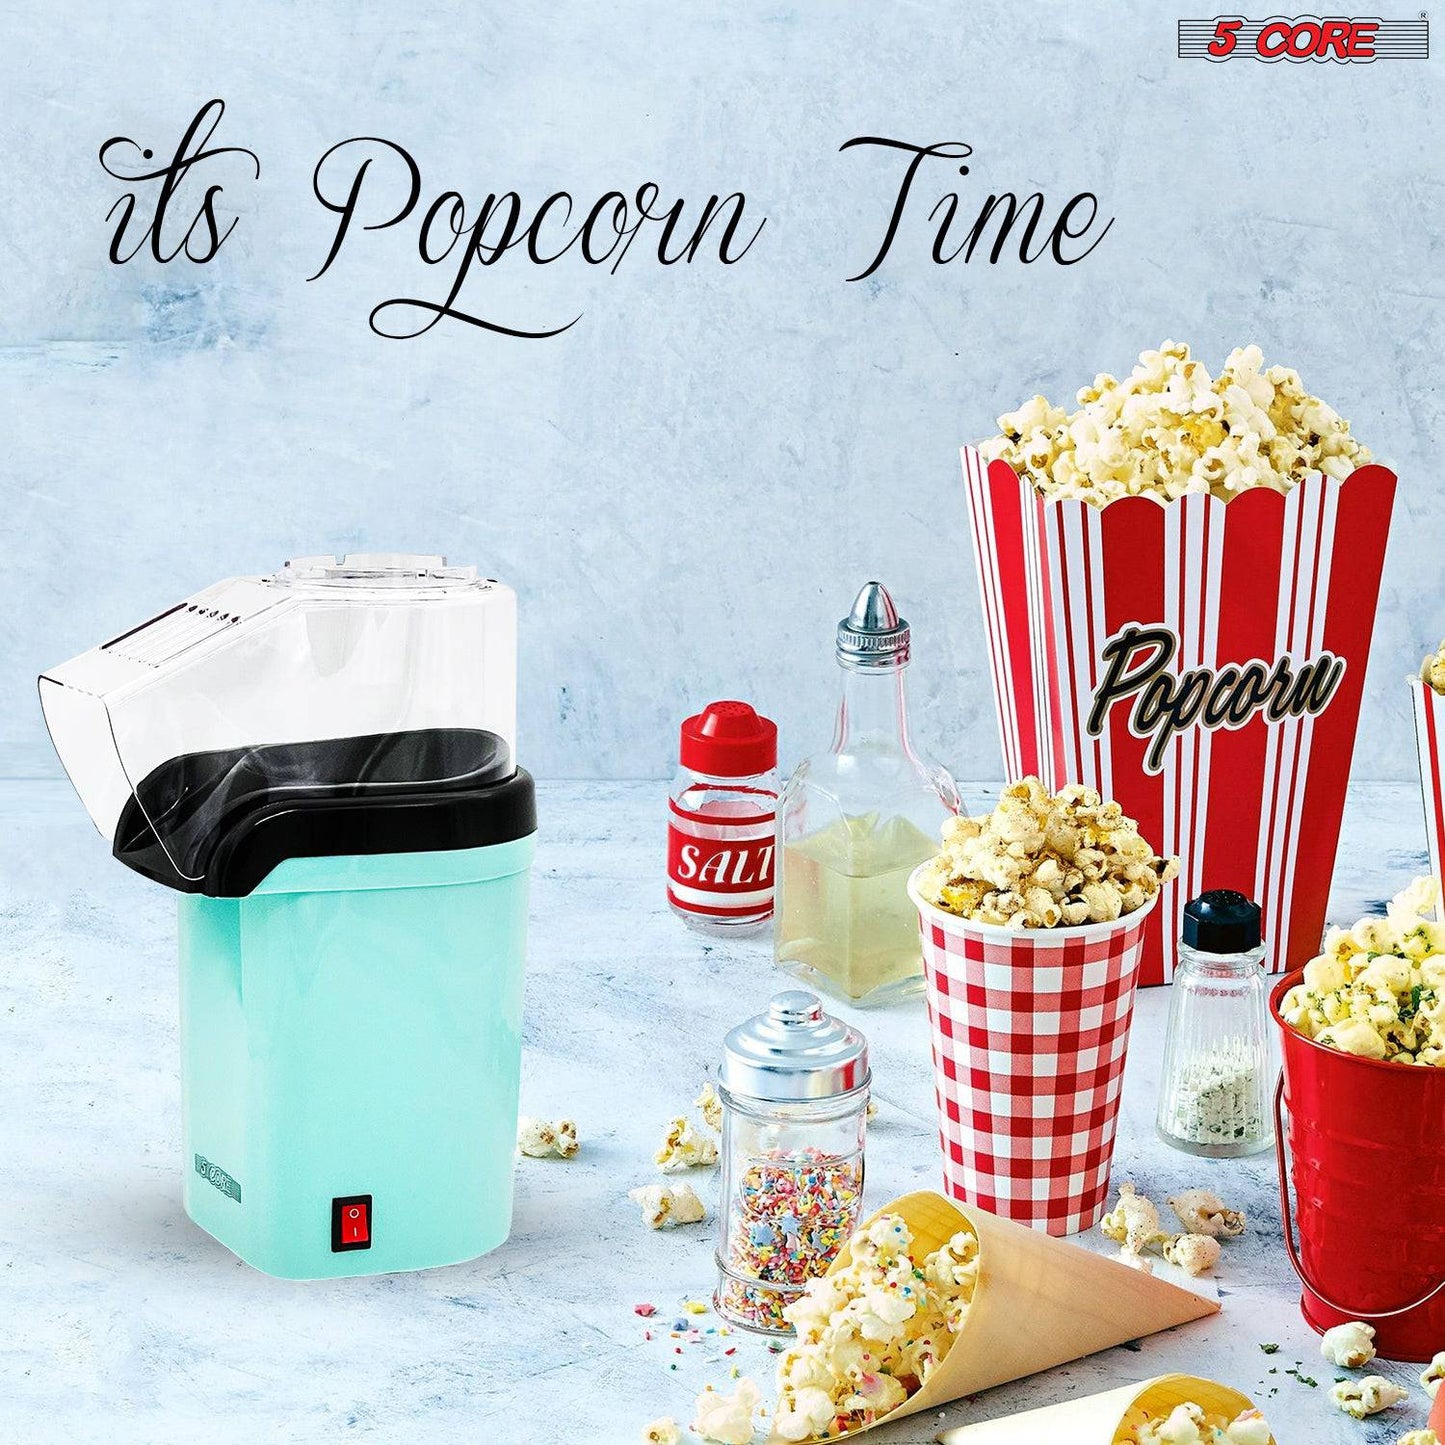 5 Core Hot Air Popcorn Popper Machine 1200W Electric Popcorn Kernel